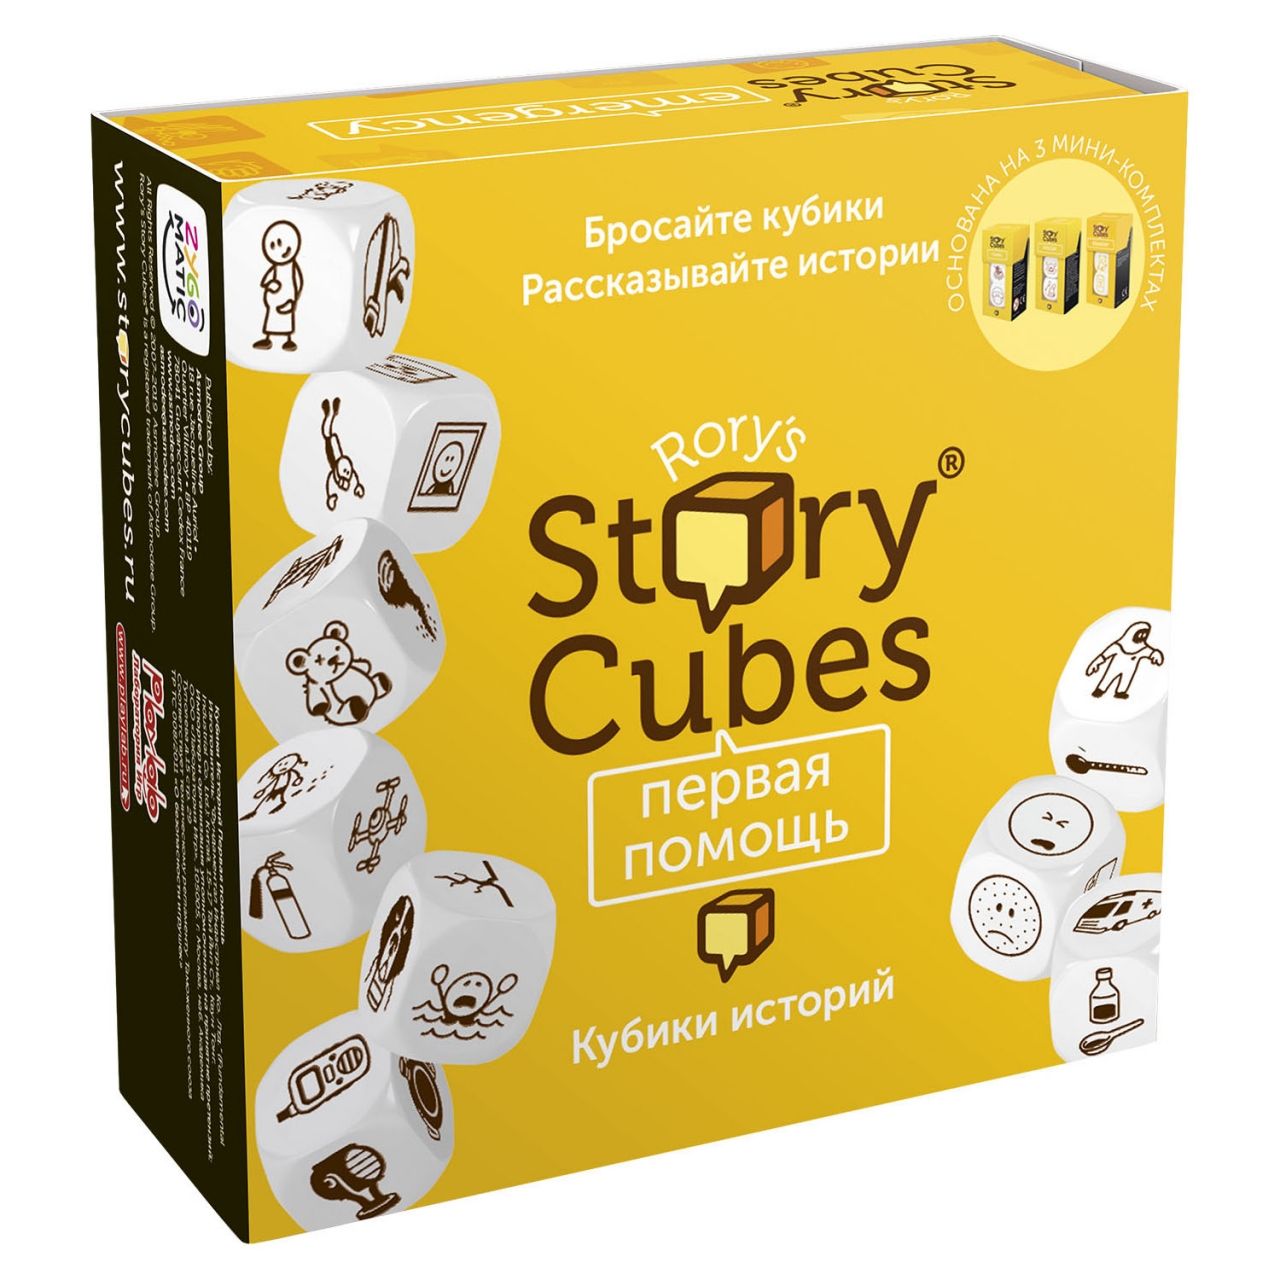 Настольная игра RORYS STORY CUBES RSC32 кубики историй Первая помощь игра кубики историй действия